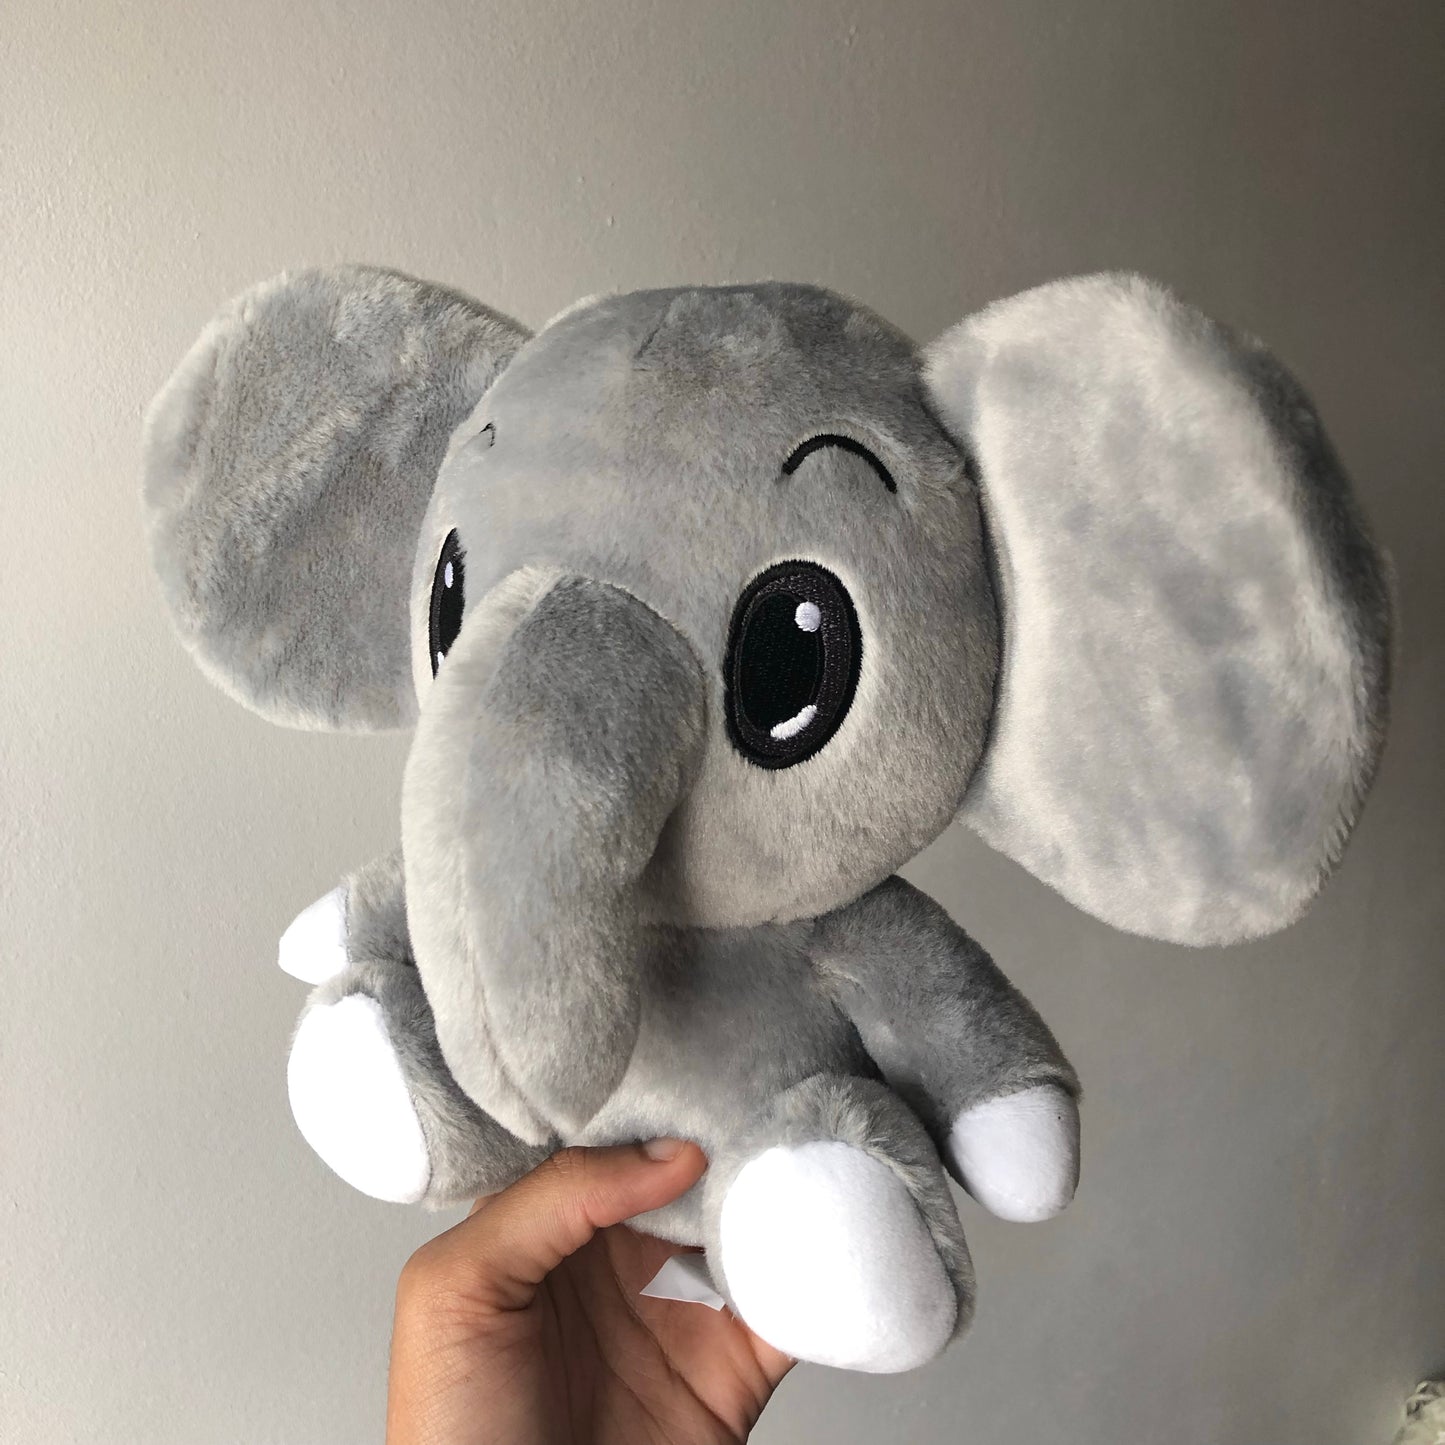 Personalised elephant plushie